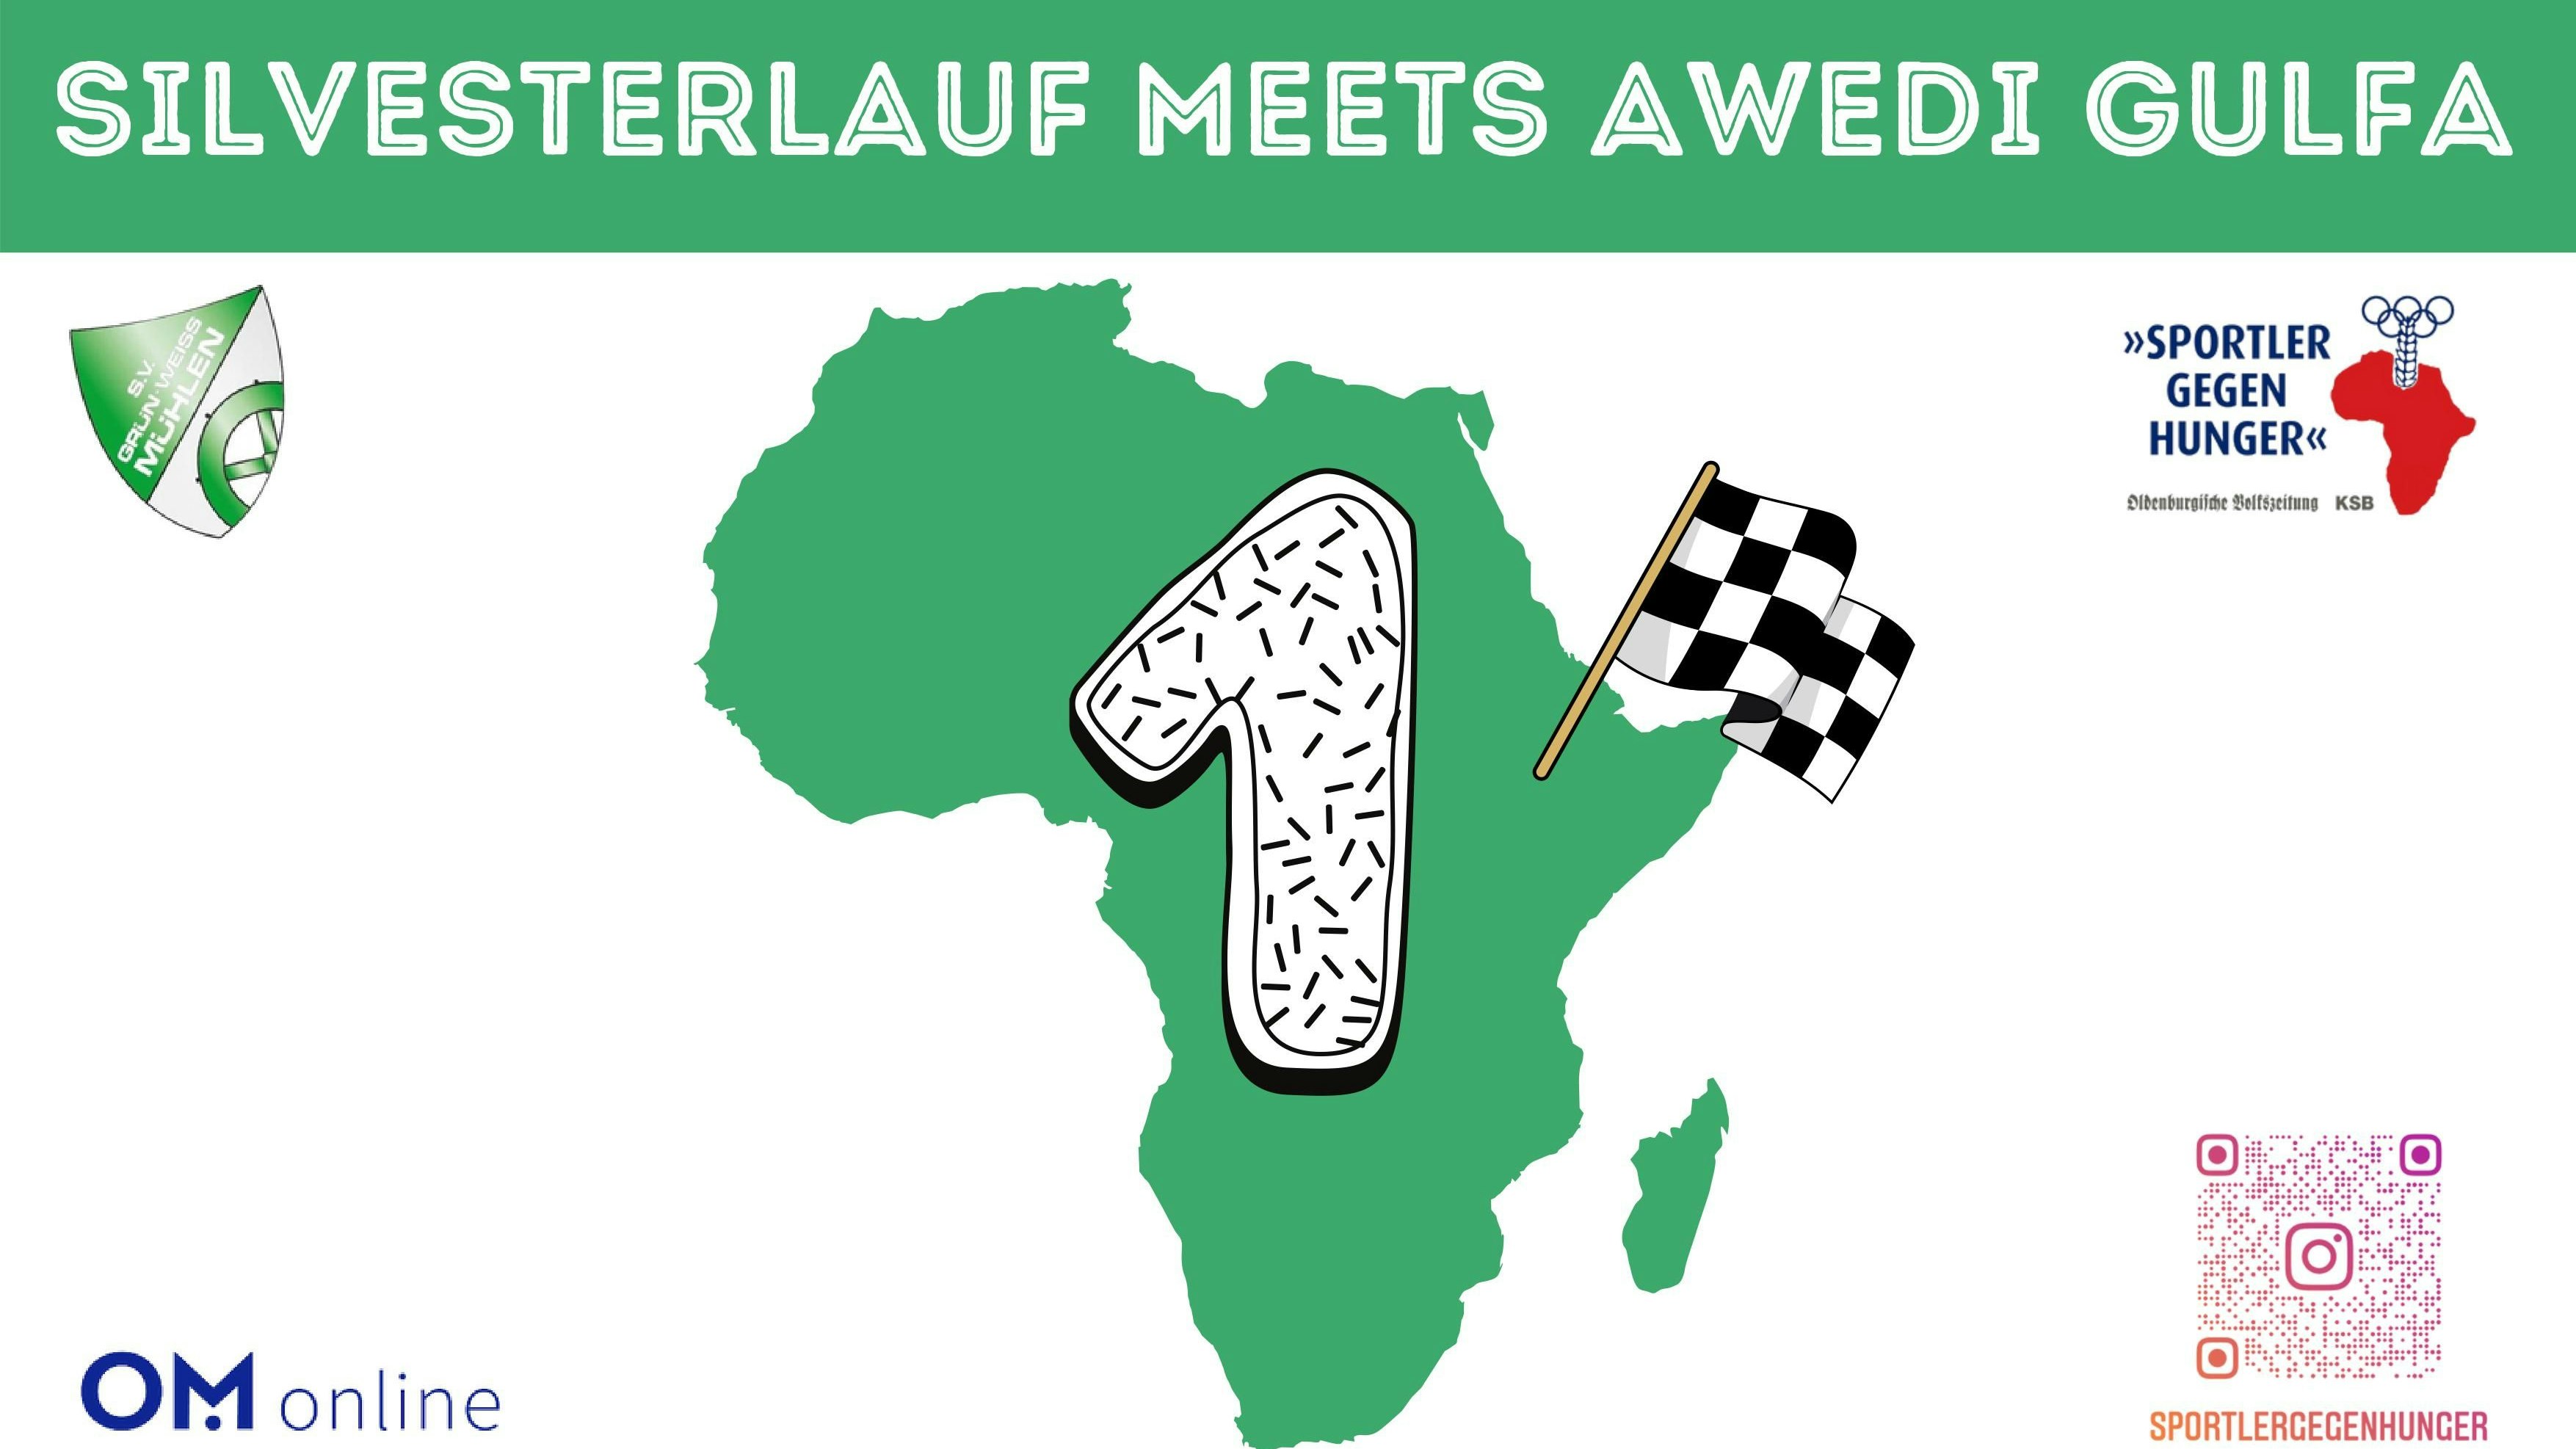 Das Accessoire für den Silvestertag: Die Startnummer zeigt den afrikanischen Kontinent, die Flagge steckt im Zielort Awedi Gulfa. Grafik: SgH